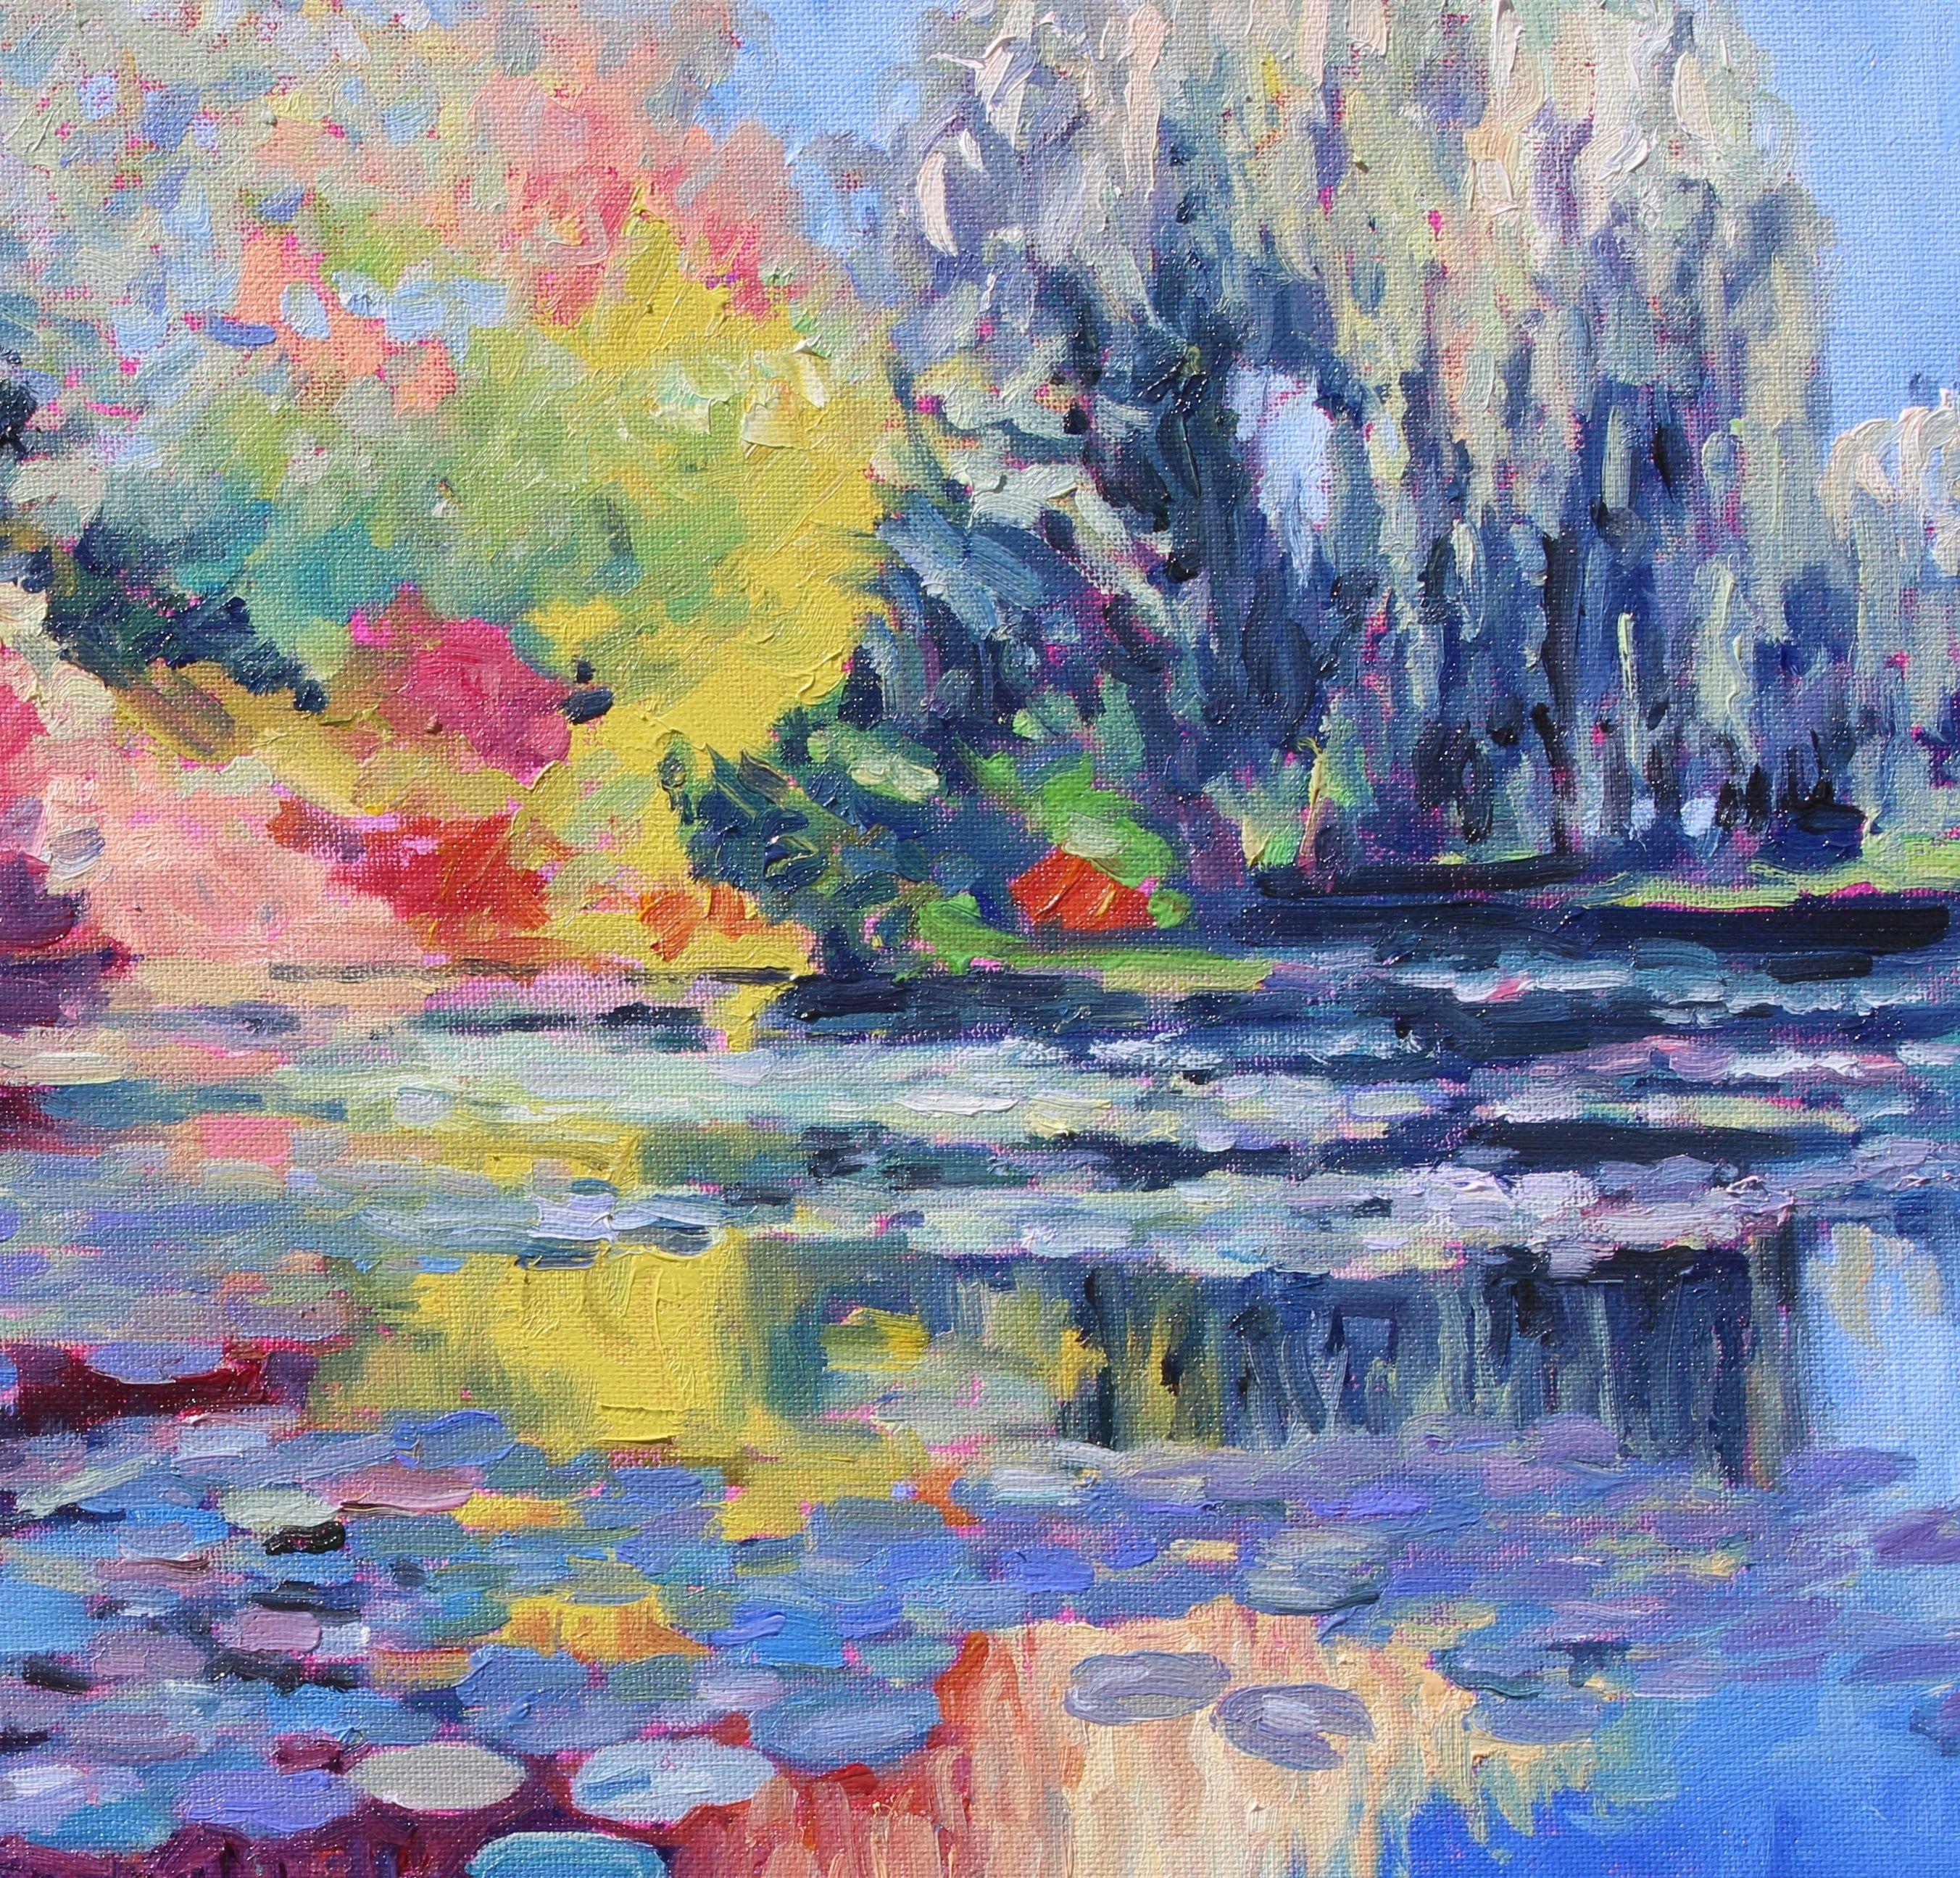 Impressionnisme contemporain.    Cette peinture a été inspirée par le jardin d'eau emblématique de Claude Monet à Giverny, en France. Peint avec des coups de pinceau vifs et des peintures à l'huile vibrantes appliquées en couche épaisse.    Cette